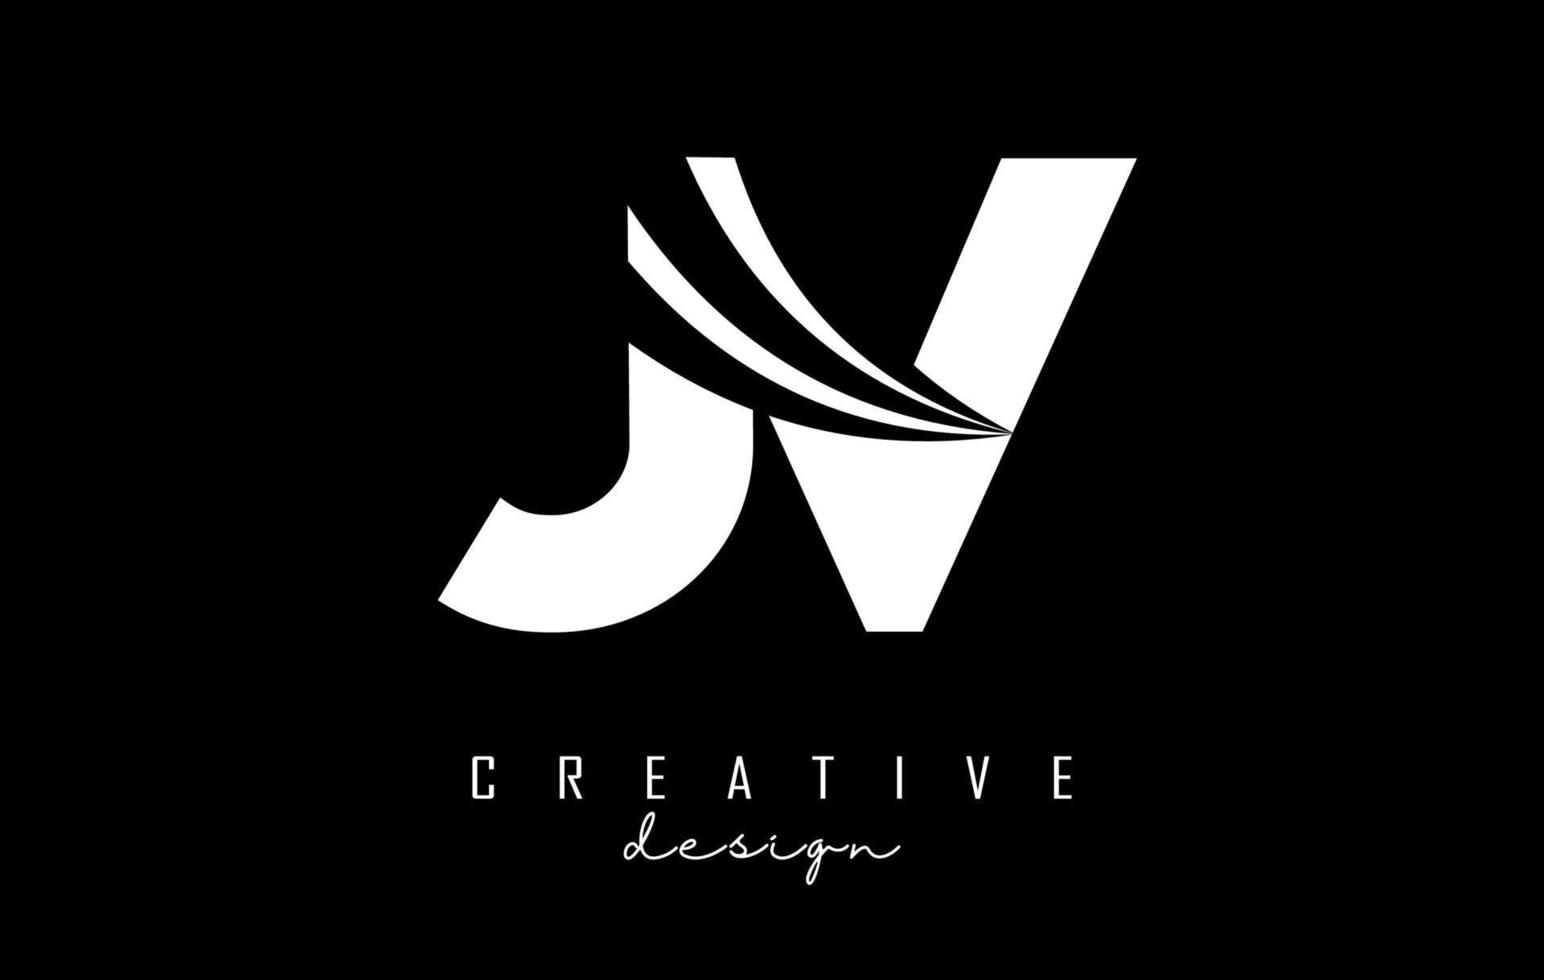 kreative weiße buchstaben jv jv-logo mit führenden linien und straßenkonzeptdesign. Buchstaben mit geometrischem Design. vektor